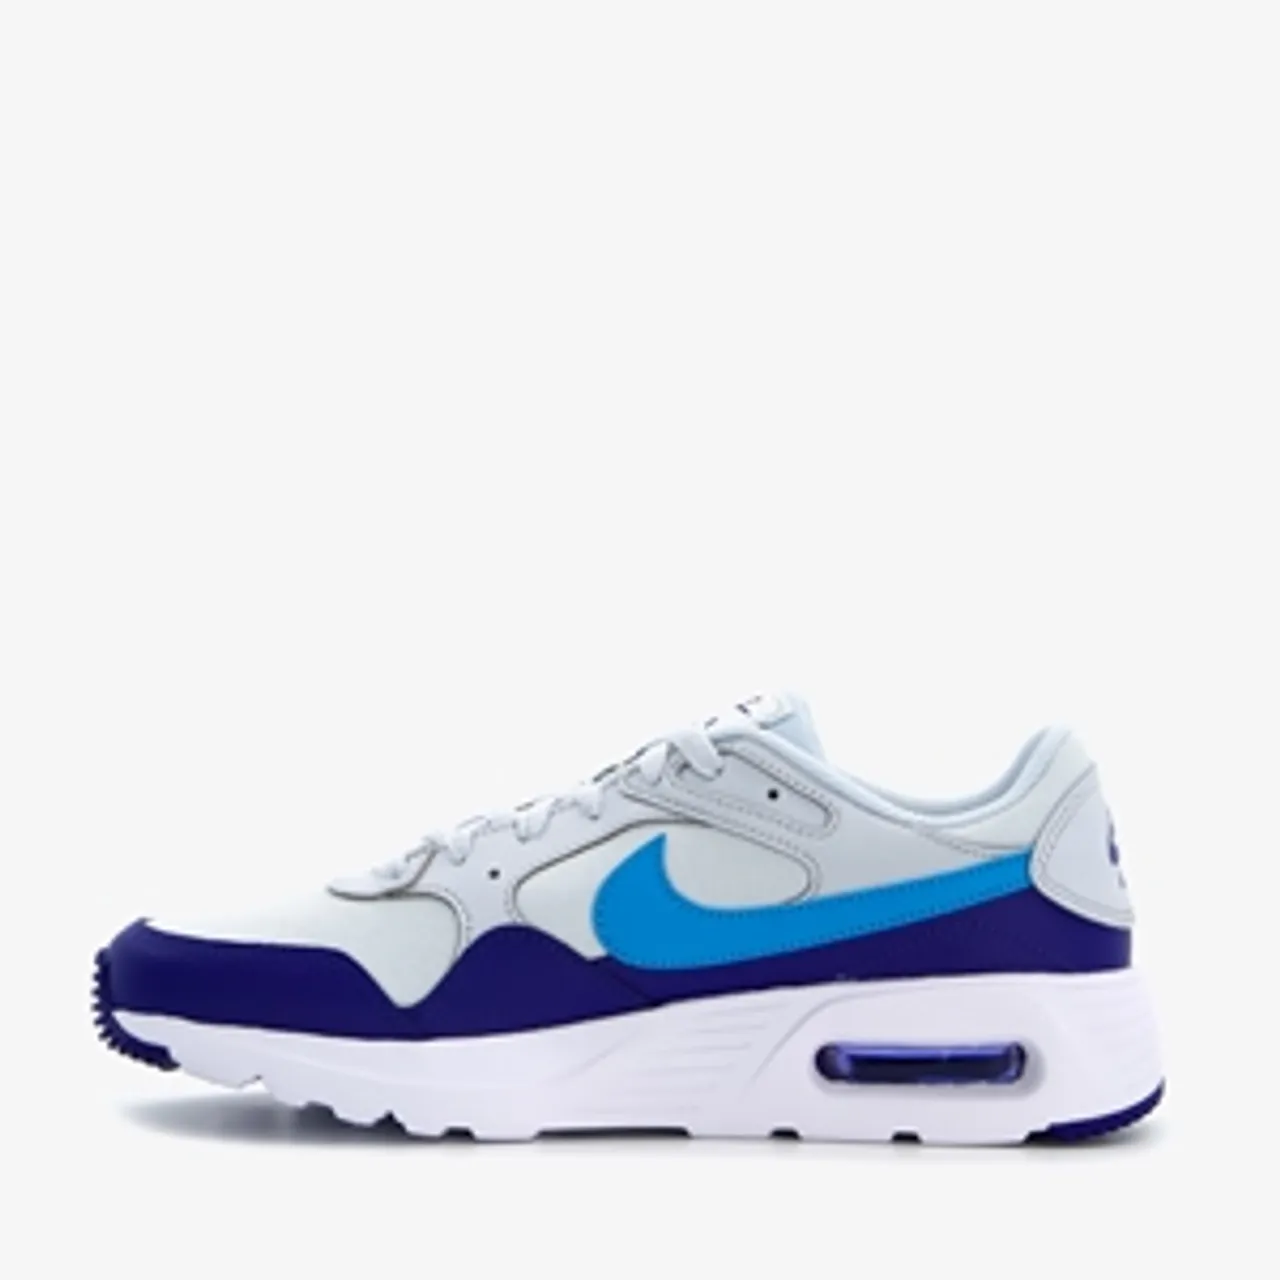 Nike Air Max SC heren sneakers wit/blauw